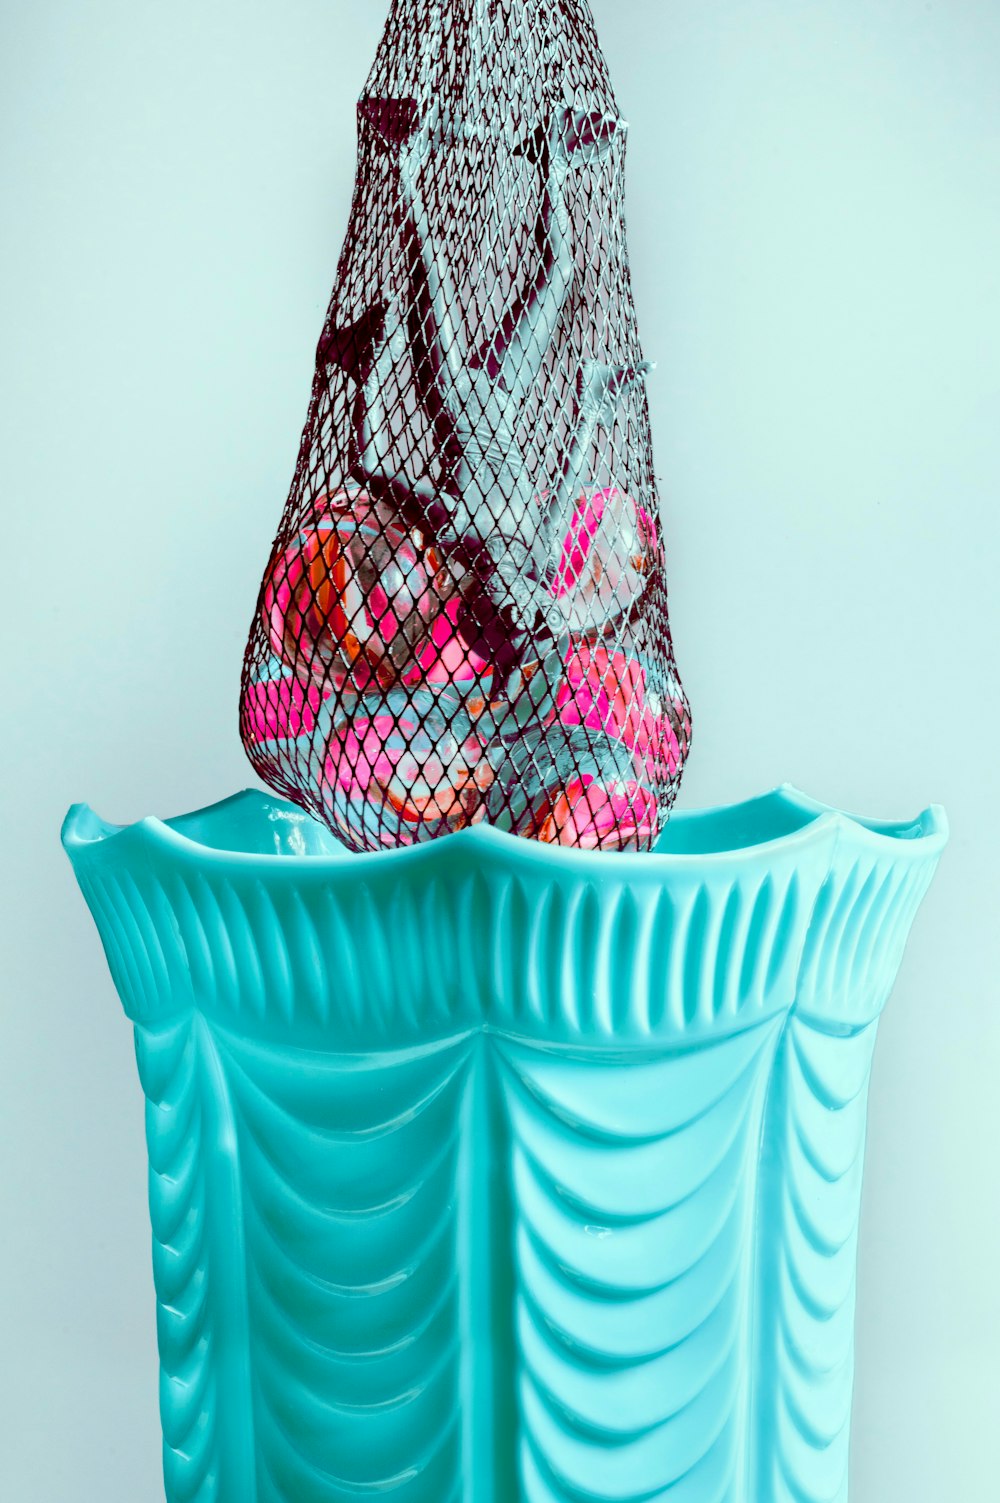 eine Netztasche auf einer blauen Vase